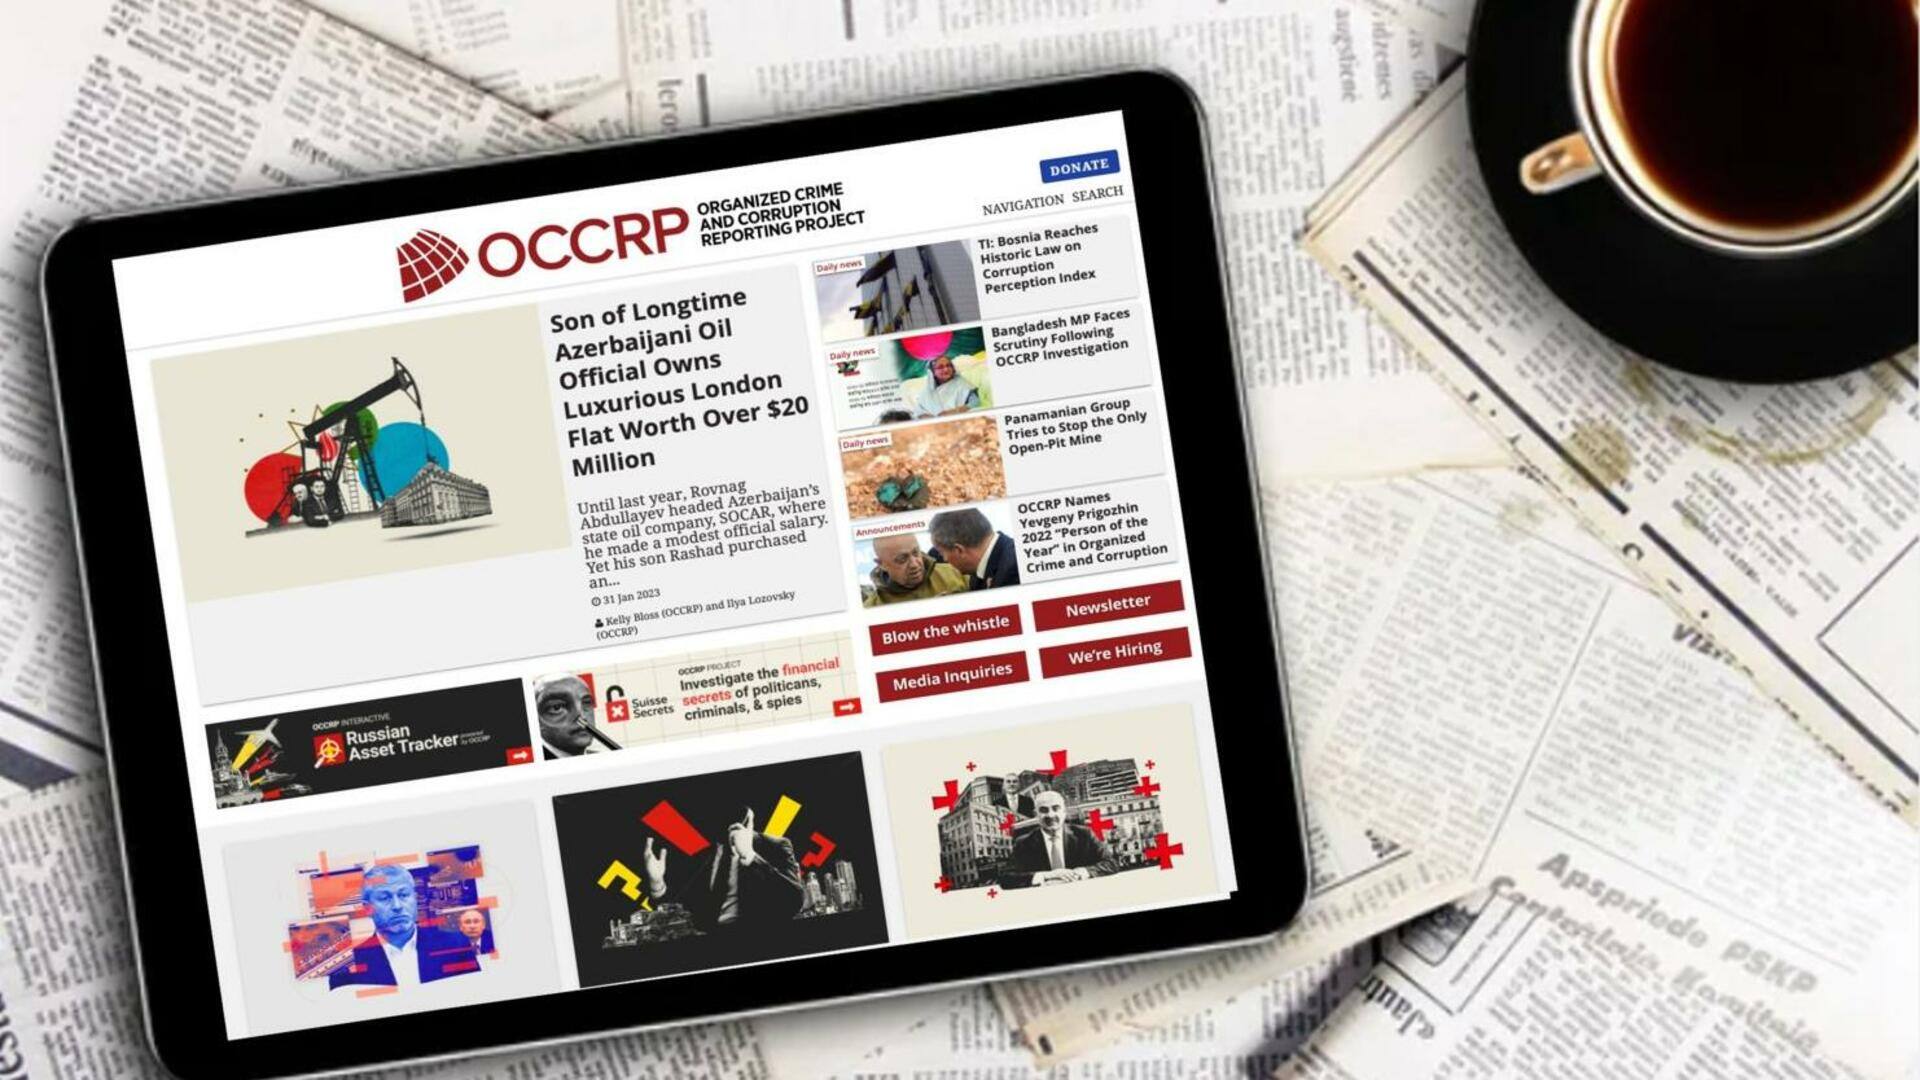 இந்திய நிறுவனங்கள் குறித்த ரகசியத் தகவல்களை வெளியிடத் திட்டமிட்டிருக்கும் OCCRP அமைப்பு